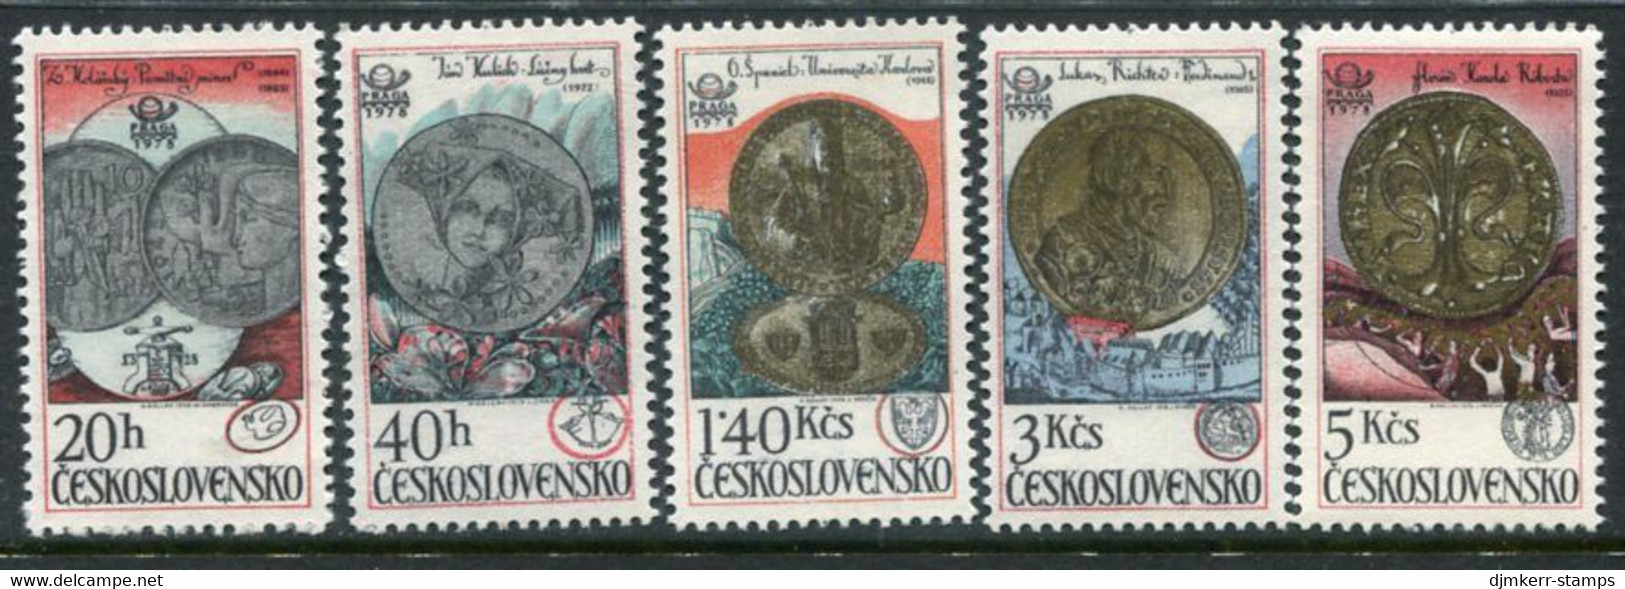 CZECHOSLOVAKIA 1978 Coins From Kremnica Mint MNH / **.   Michel 2427-31 - Ongebruikt